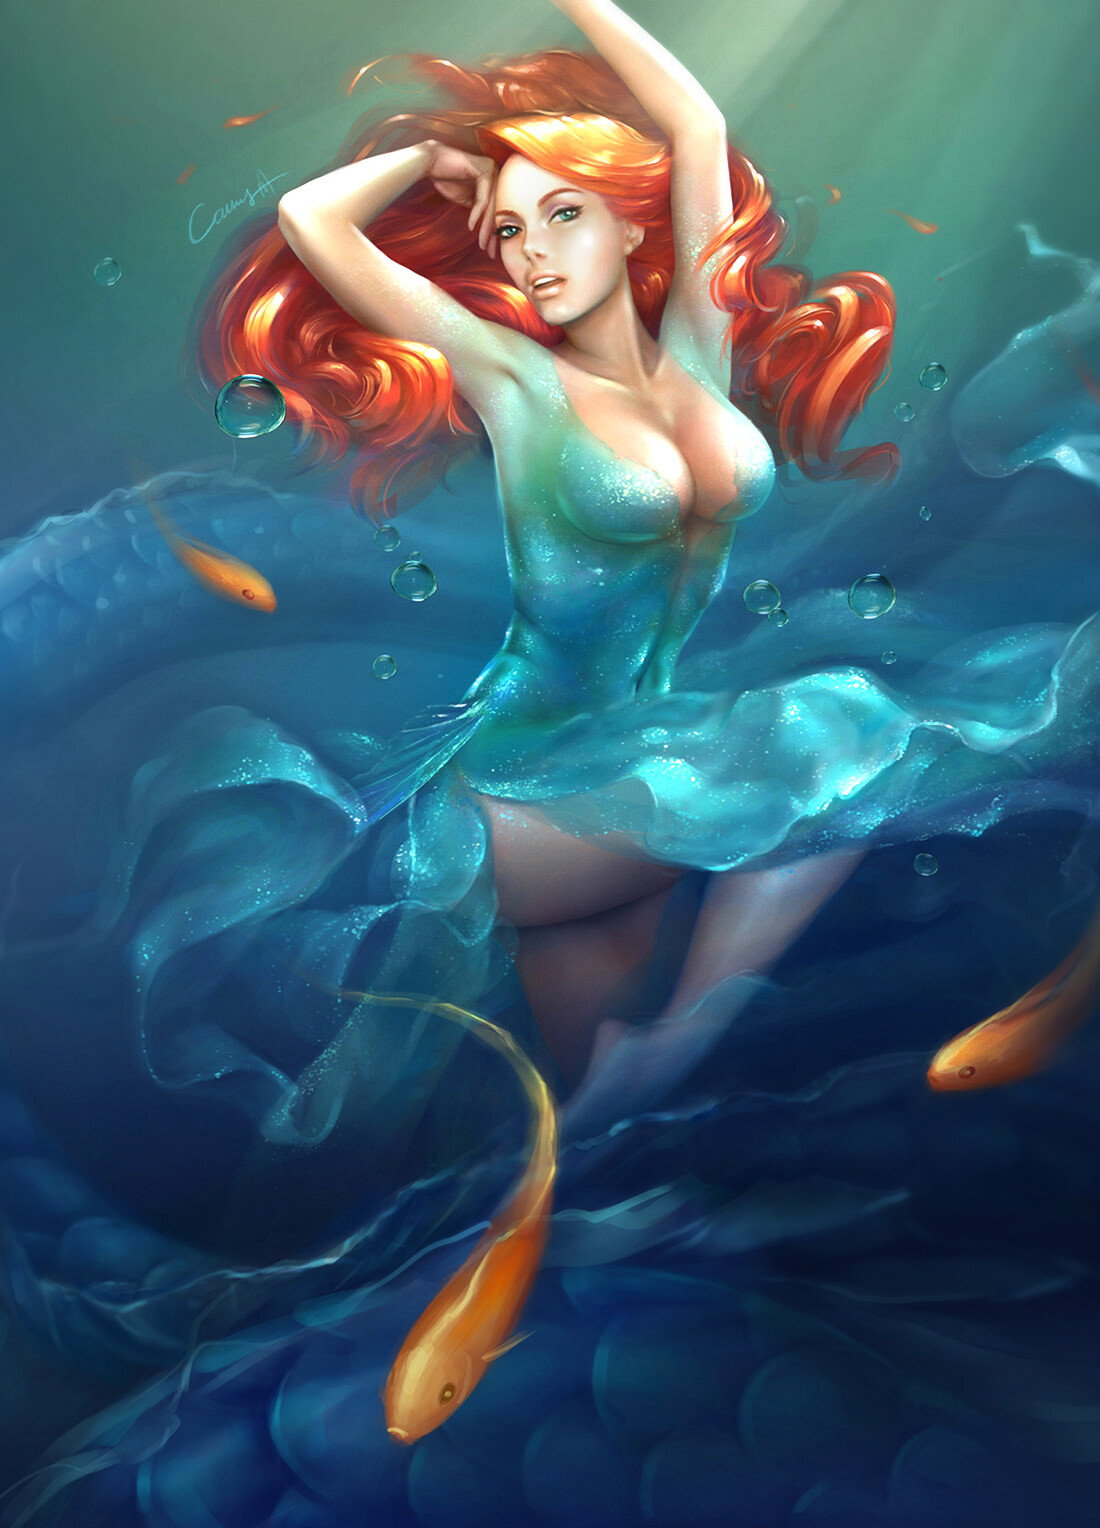 Cathy Zhou - Fan Art of Ariel - The Little Mermaid.